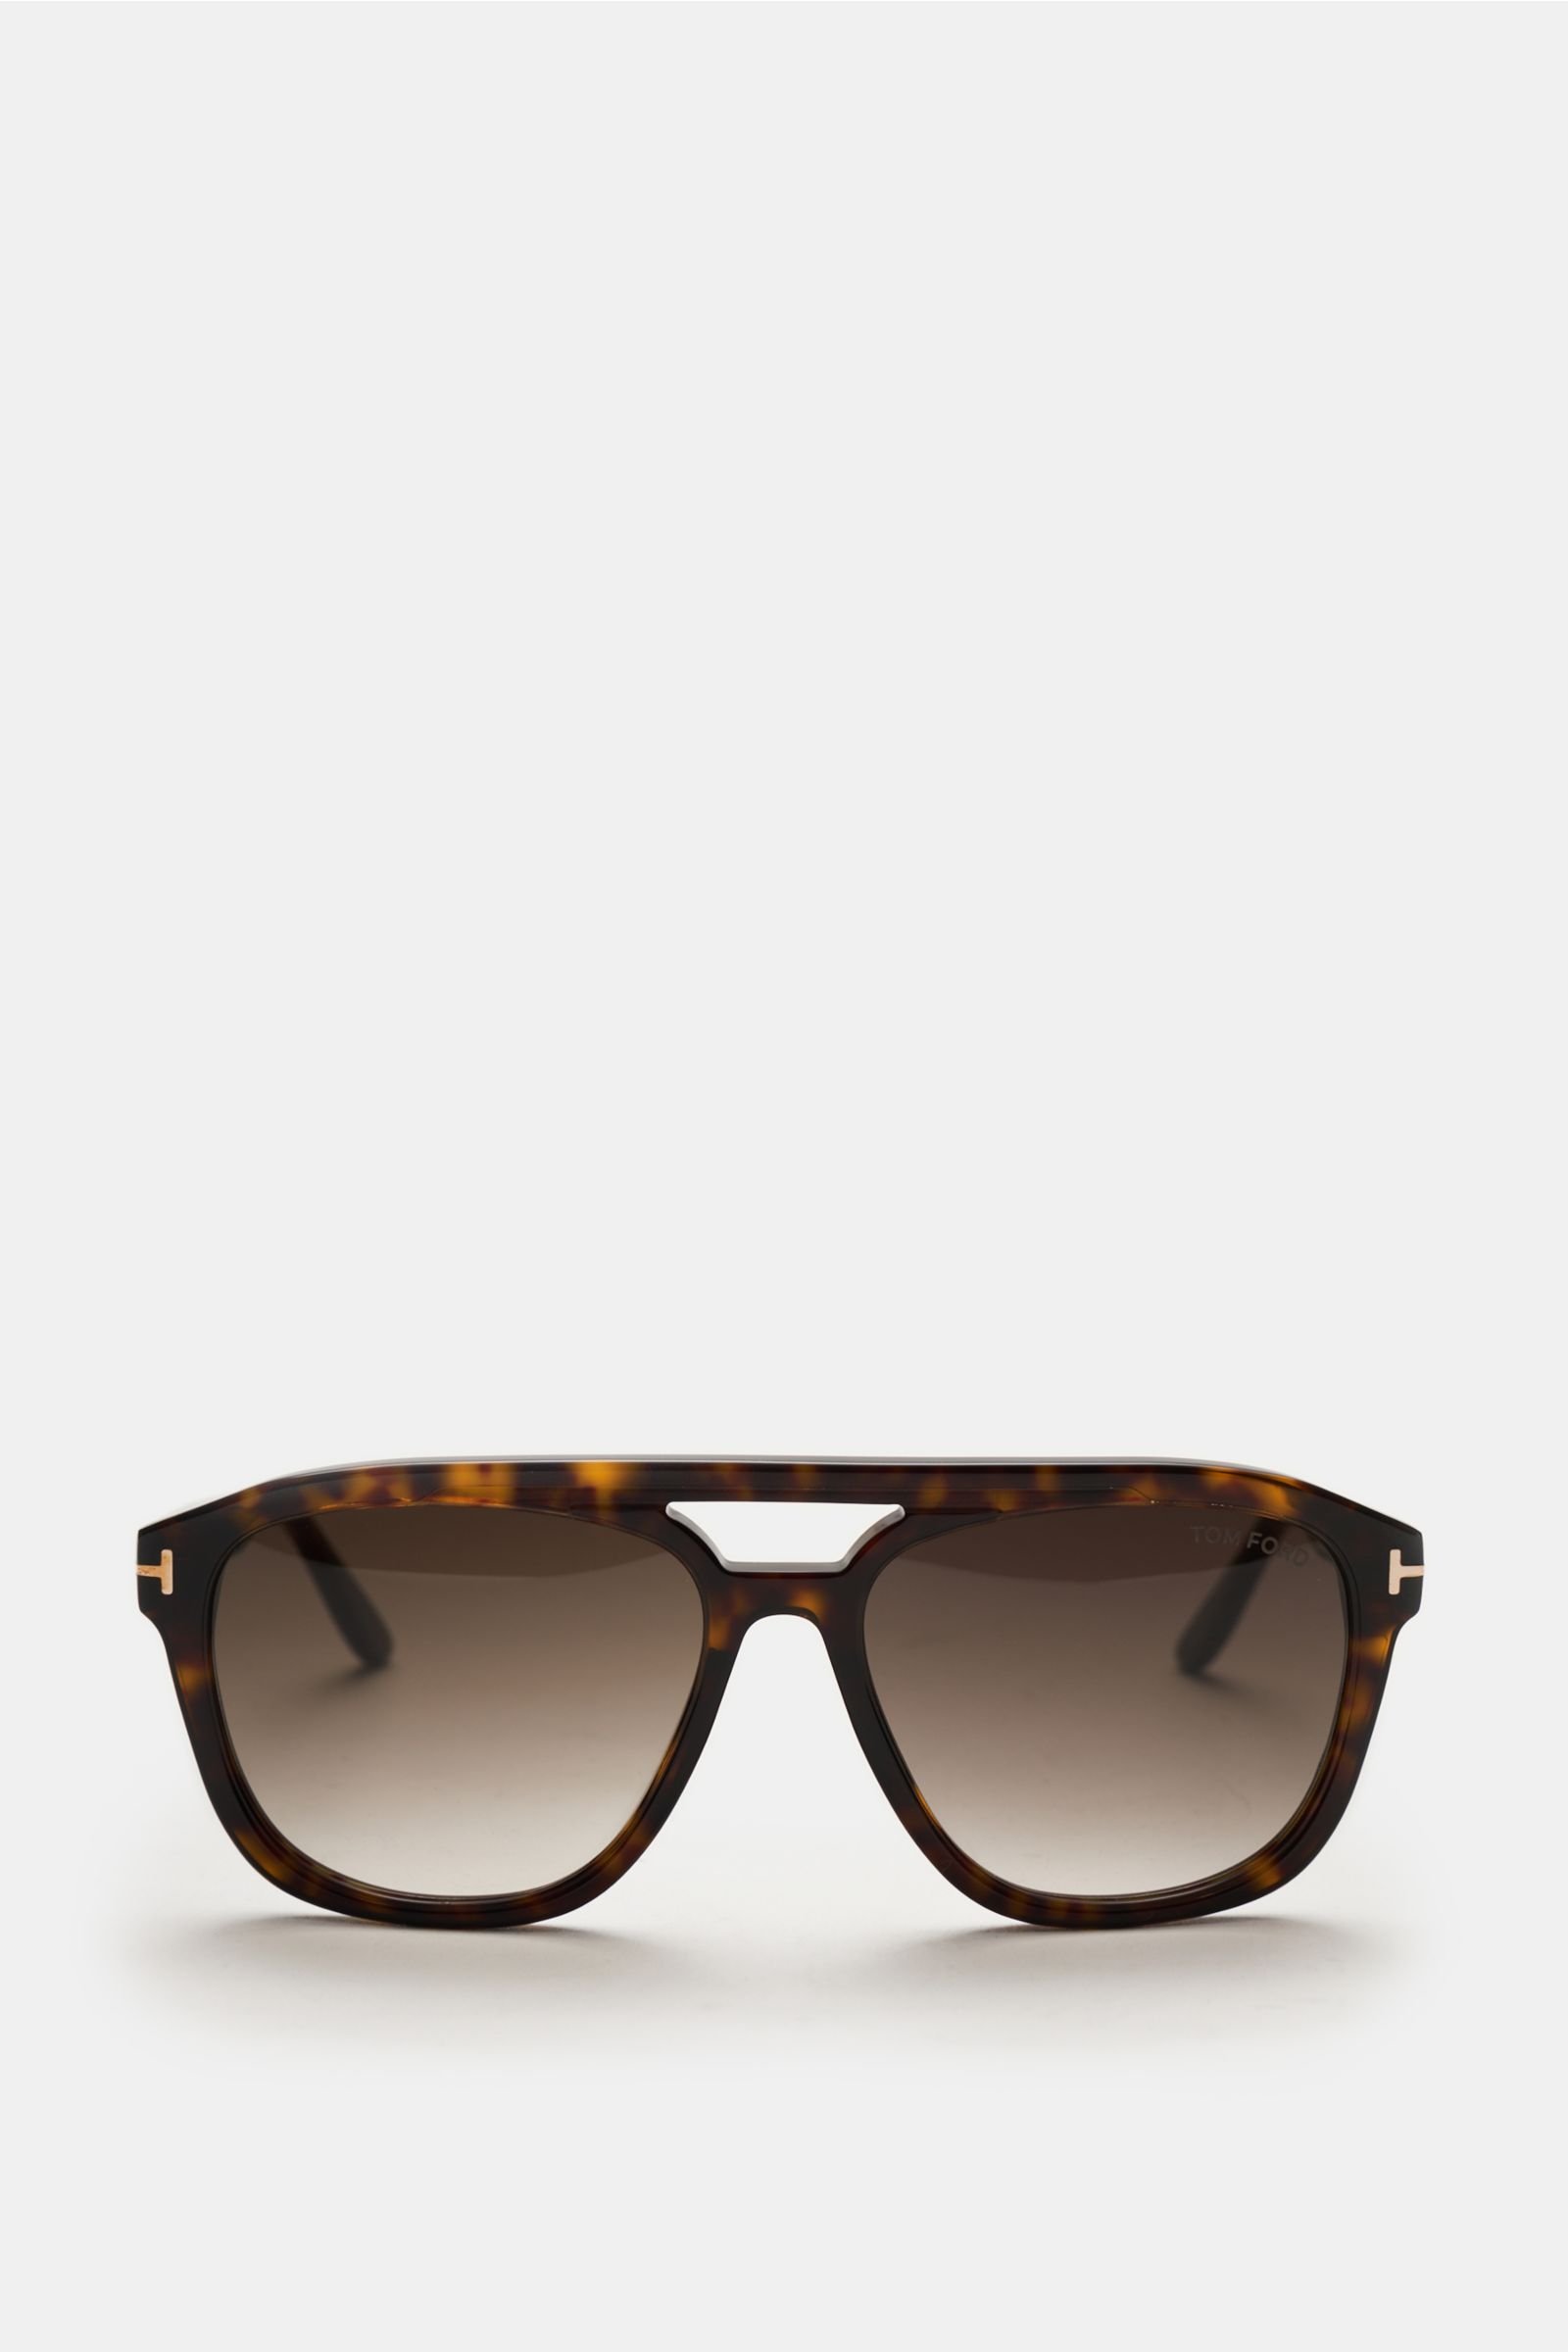 Sunglasses 'Gerrard' dark brown patterned/brown